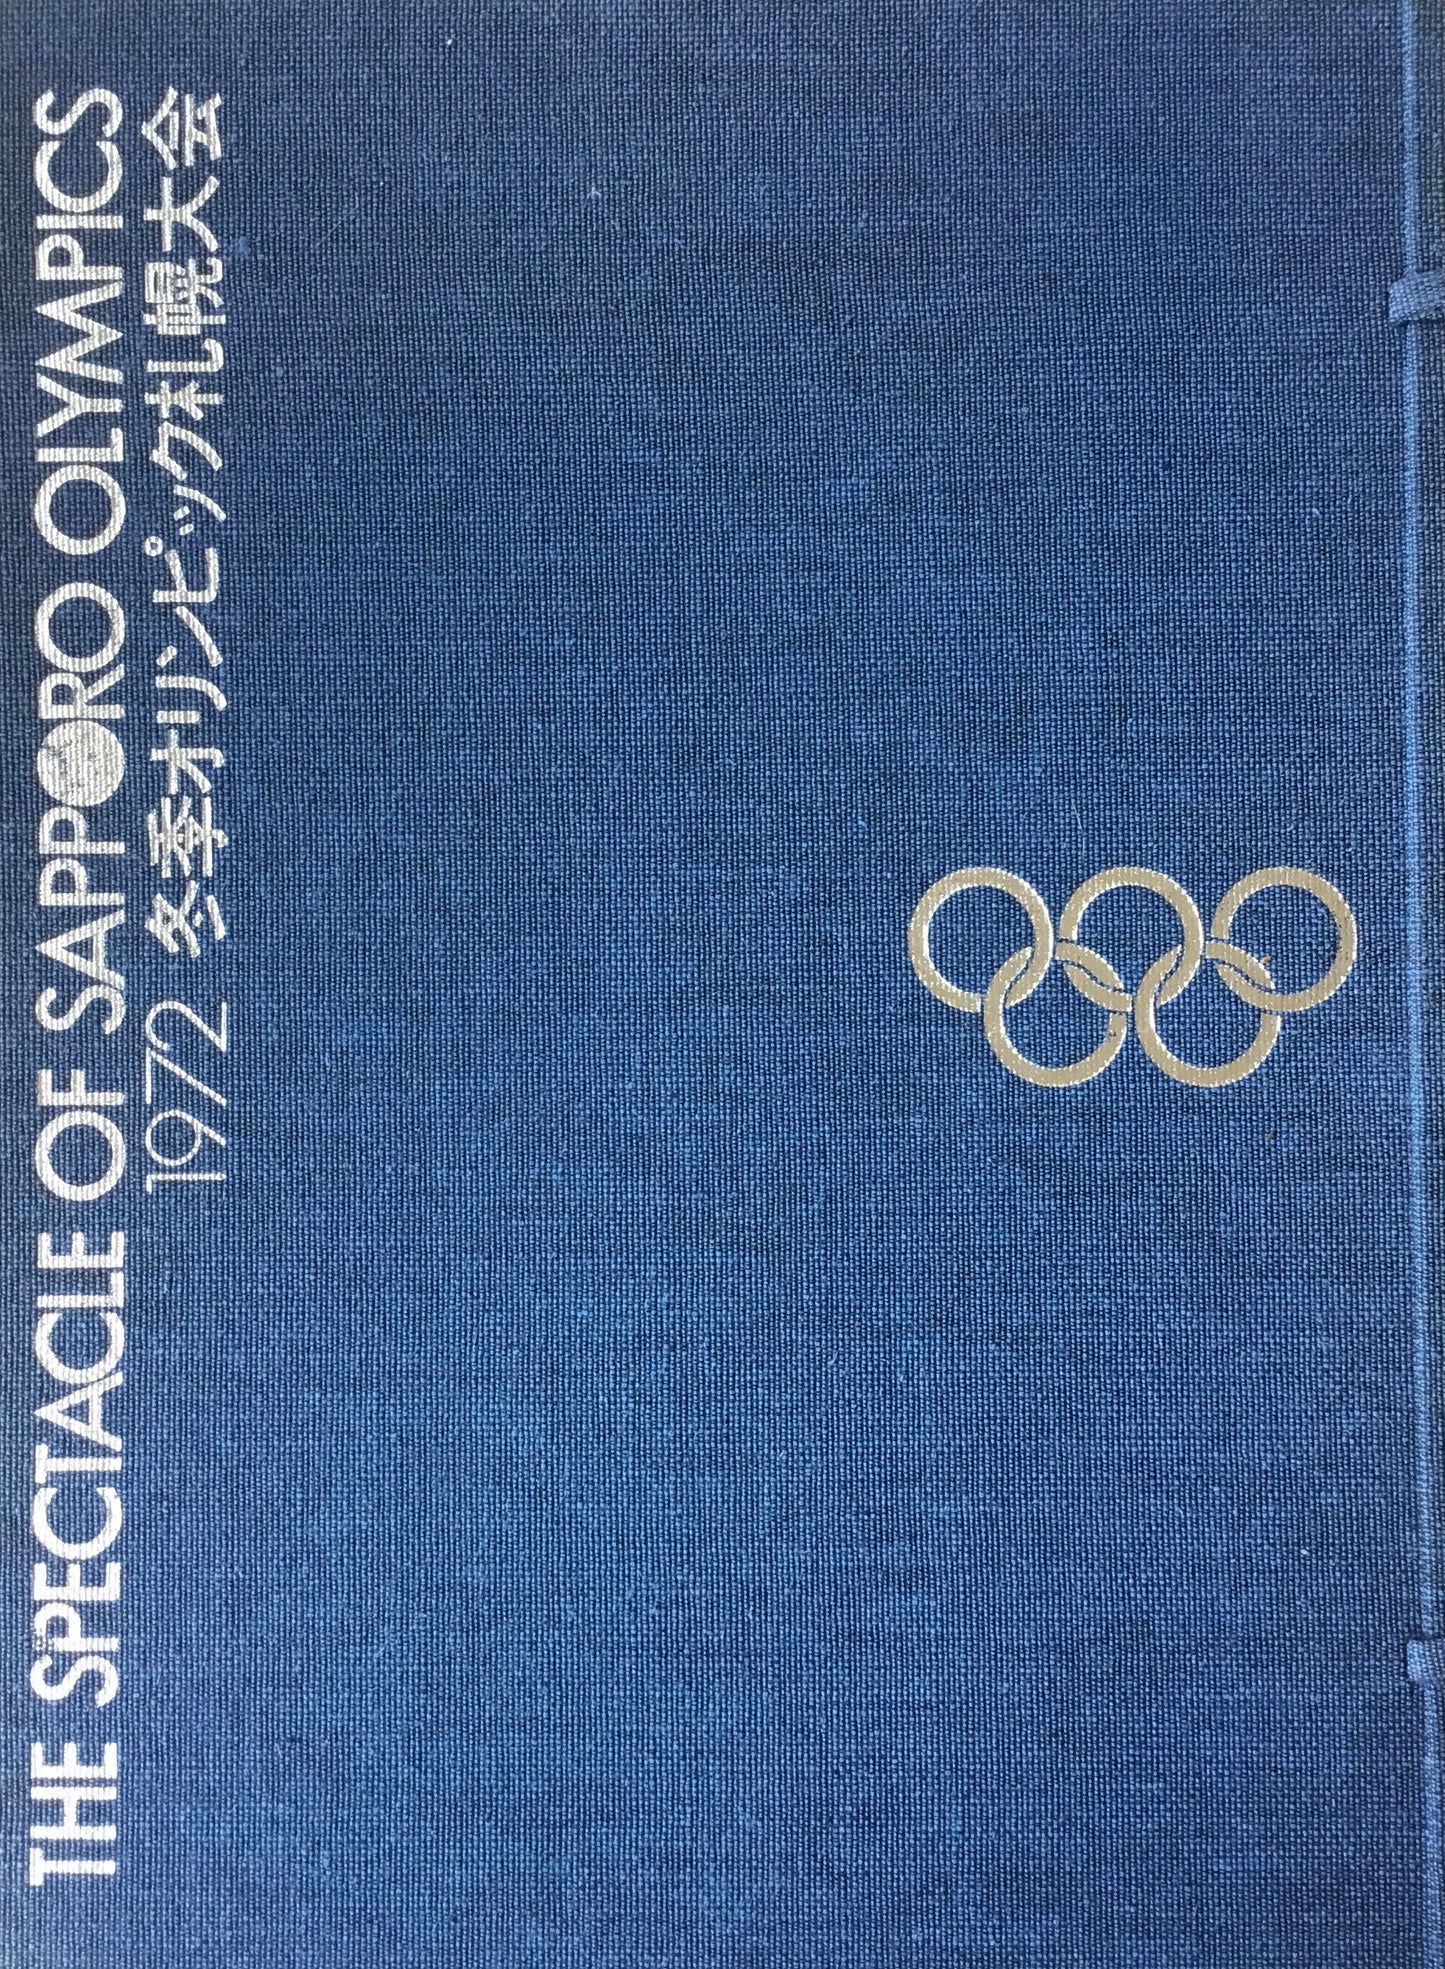 1972 冬季オリンピック札幌大会　The Spectacle of Sapporo Olympics